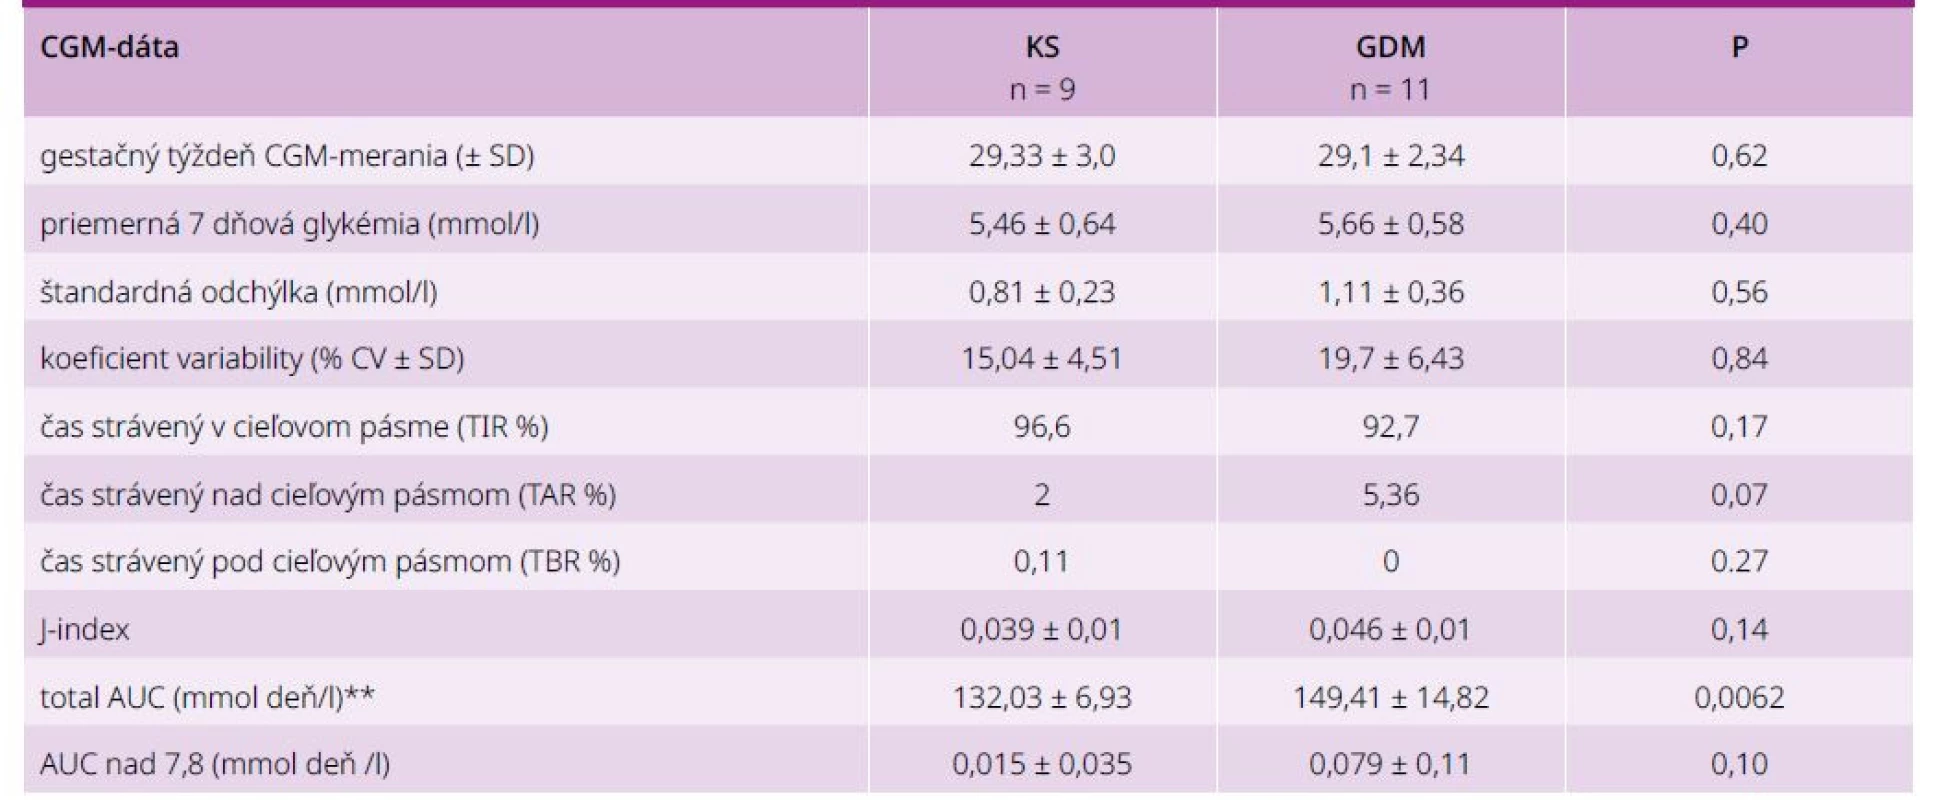 Glykemická variabilita gravidných žien GDM/KS